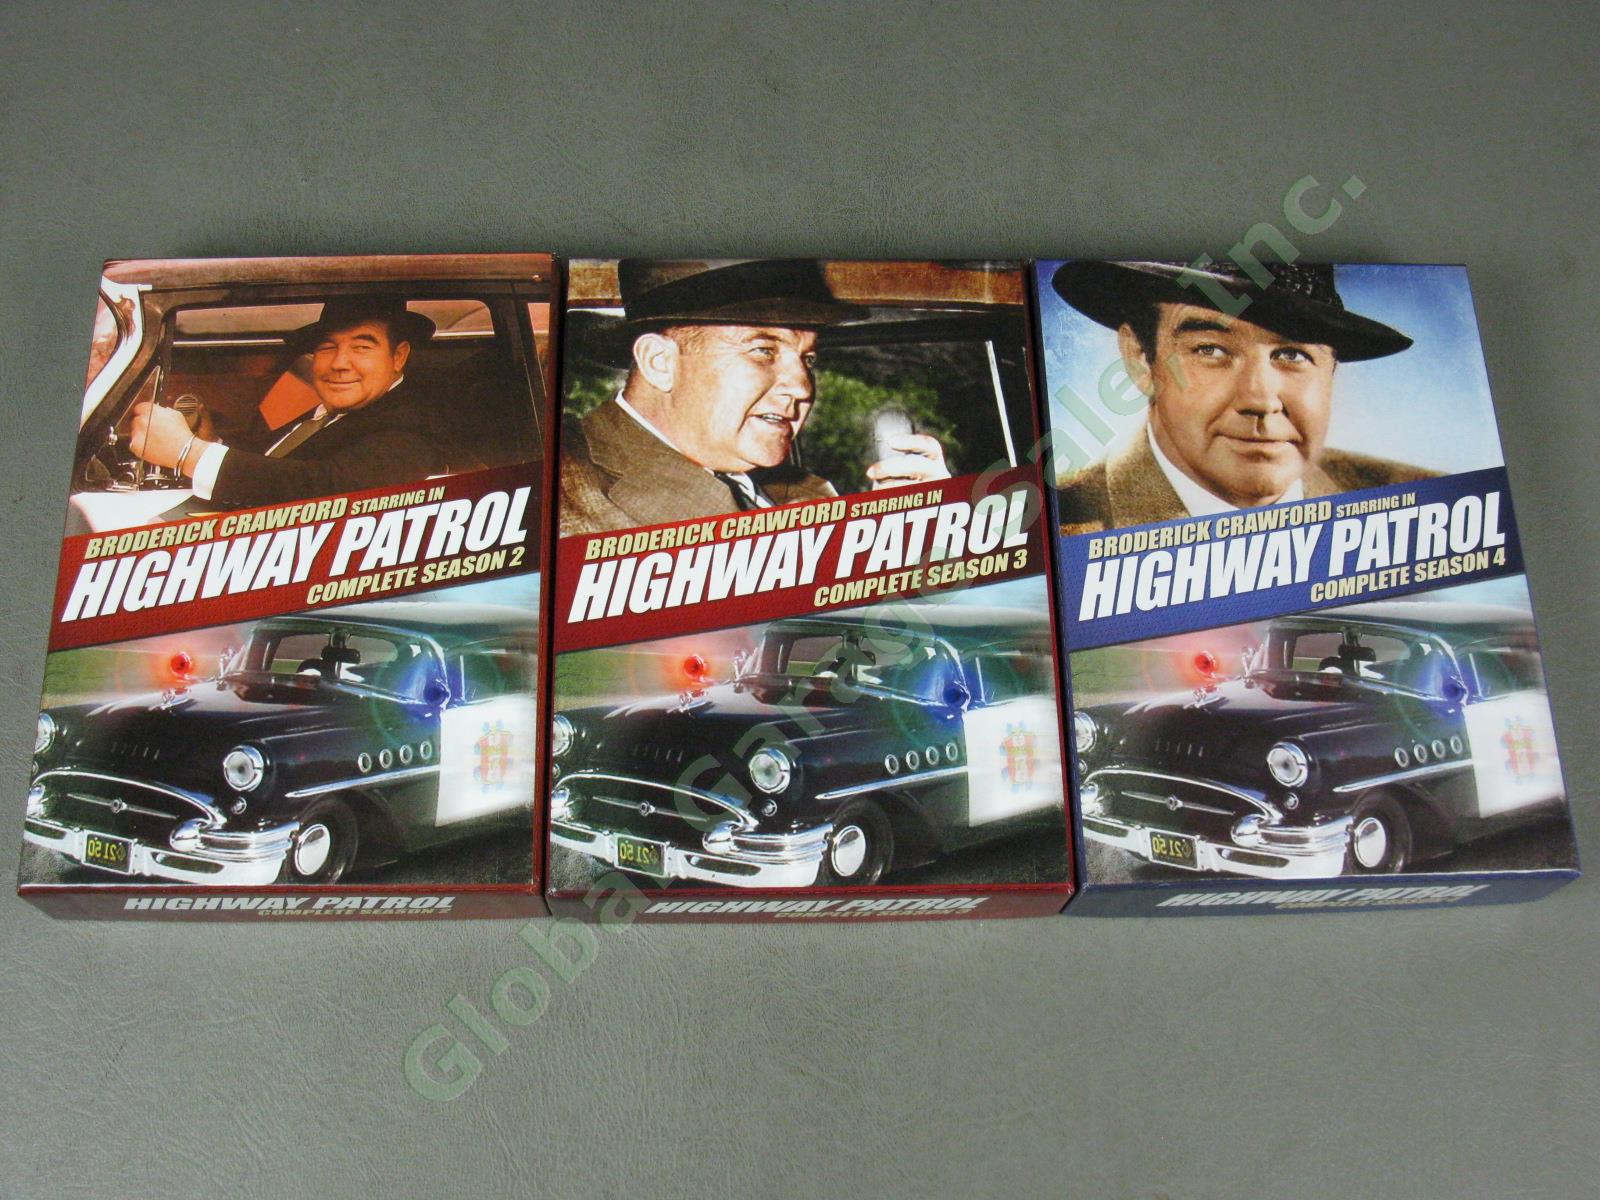 Highway Patrol 25-DVD Box Set Lot Complete 1950s TV Series Seasons 1 2 3 4 NR! 2